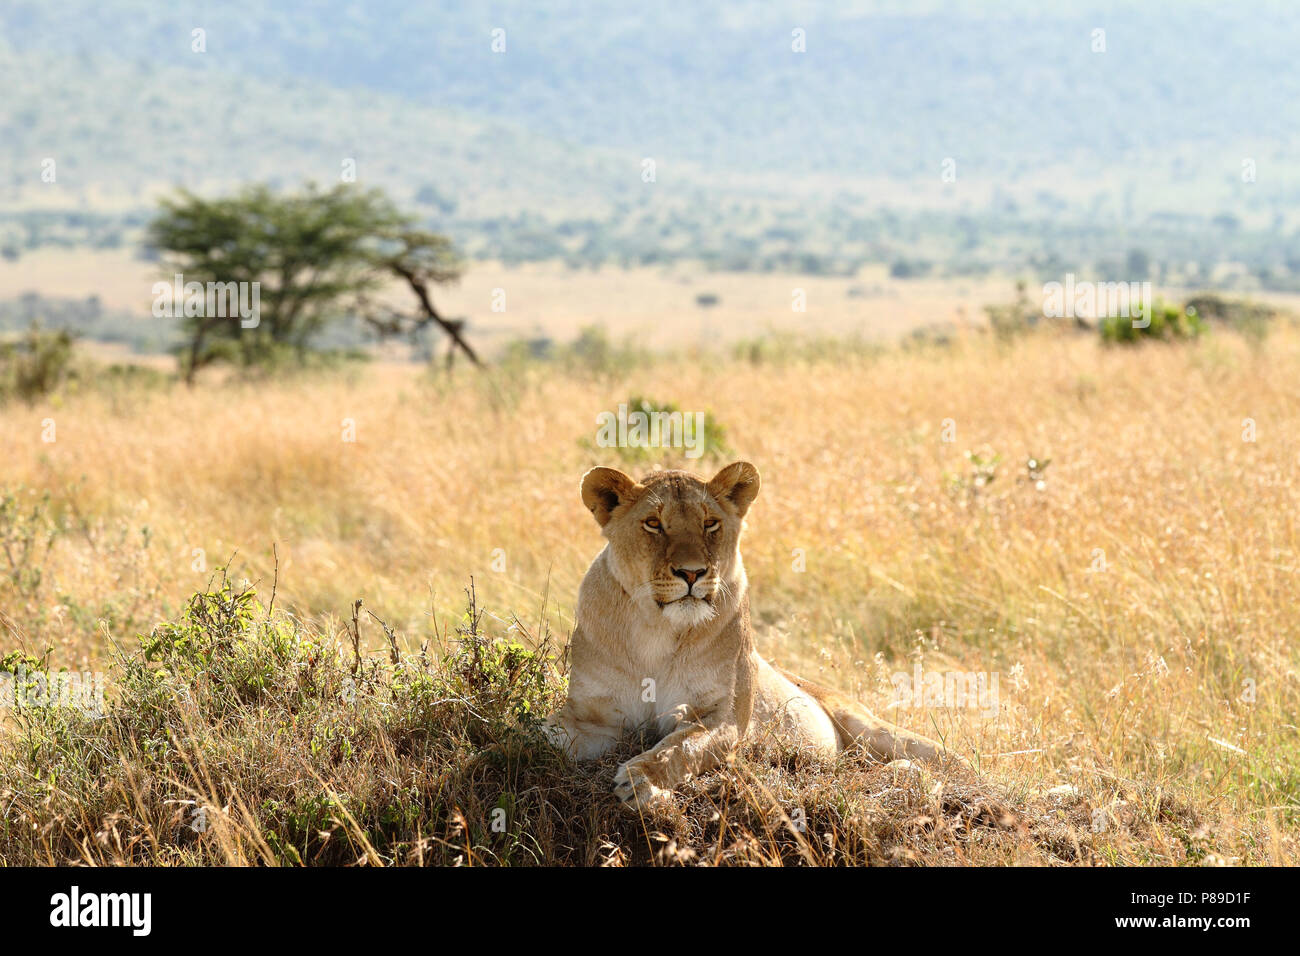 Lioness in stealth bush of Masai Mara Stock Photo